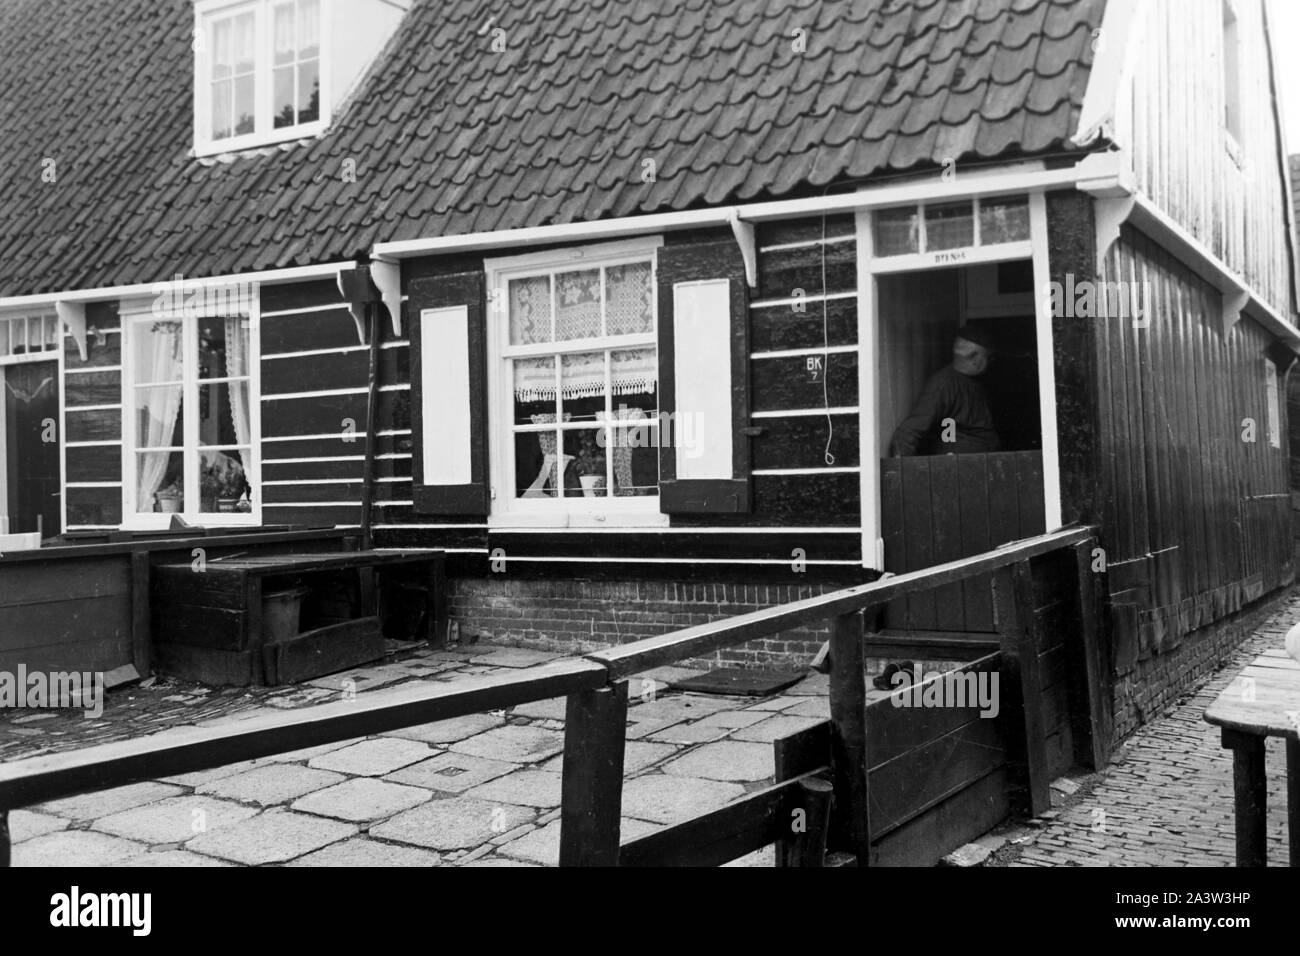 Vorgarten eines Hauses im Dorf auf der Insel Marken, Niederlande 1971. Front garden of a house in the village on Marken island, The Netherlands 1971. Stock Photo